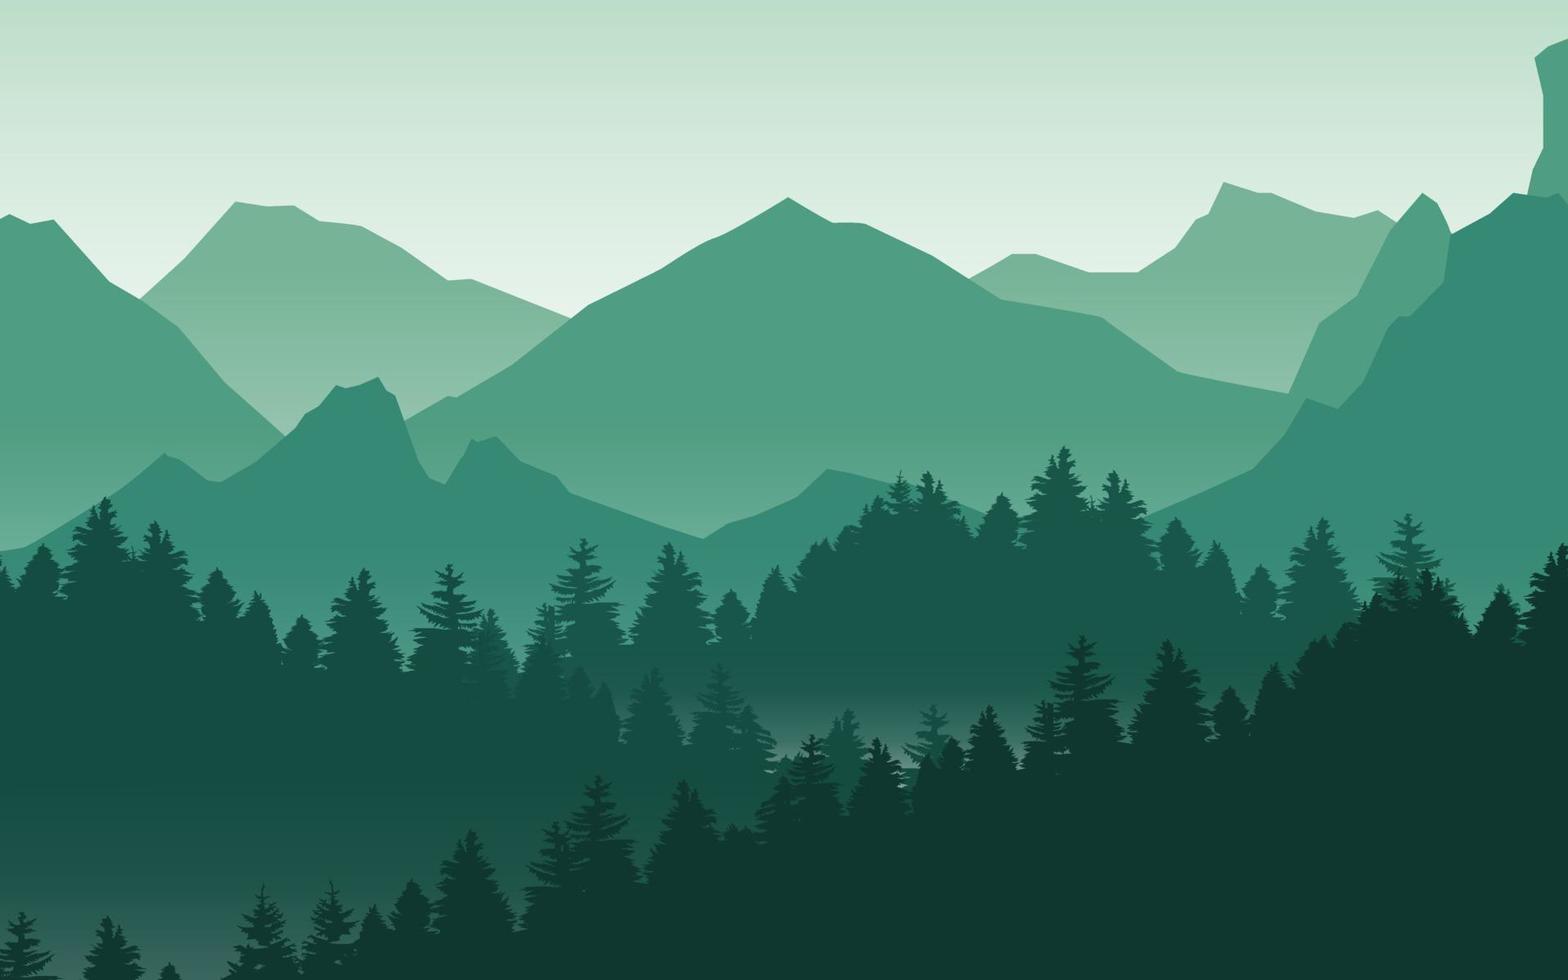 fond de nature de paysage de montagne de vecteur en vert. illustration vectorielle d'aventure de voyage.